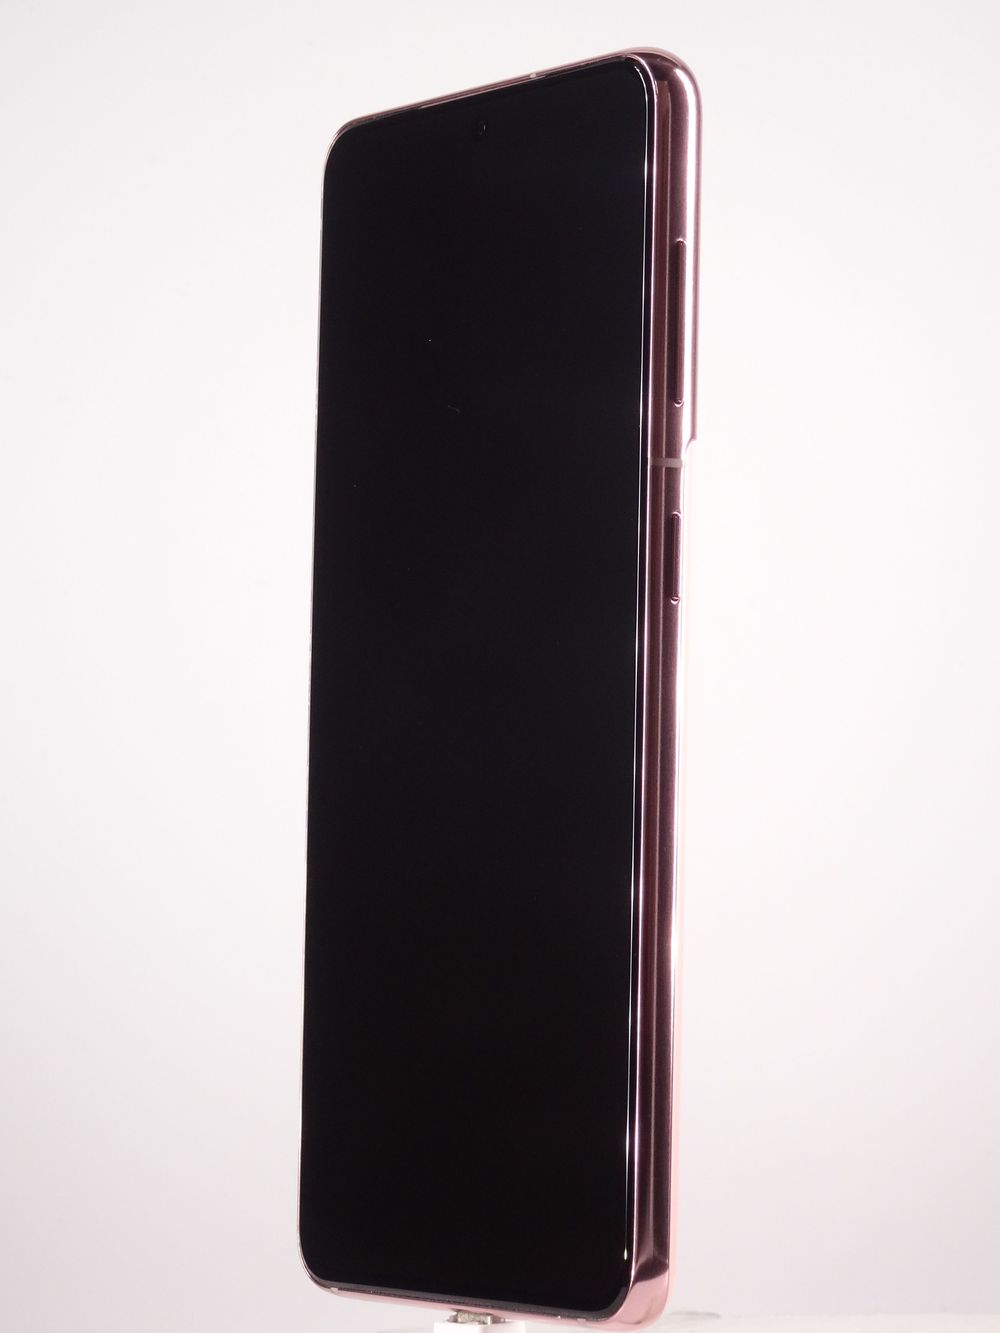 Мобилен телефон Samsung Galaxy S21 5G, Pink, 128 GB, Excelent